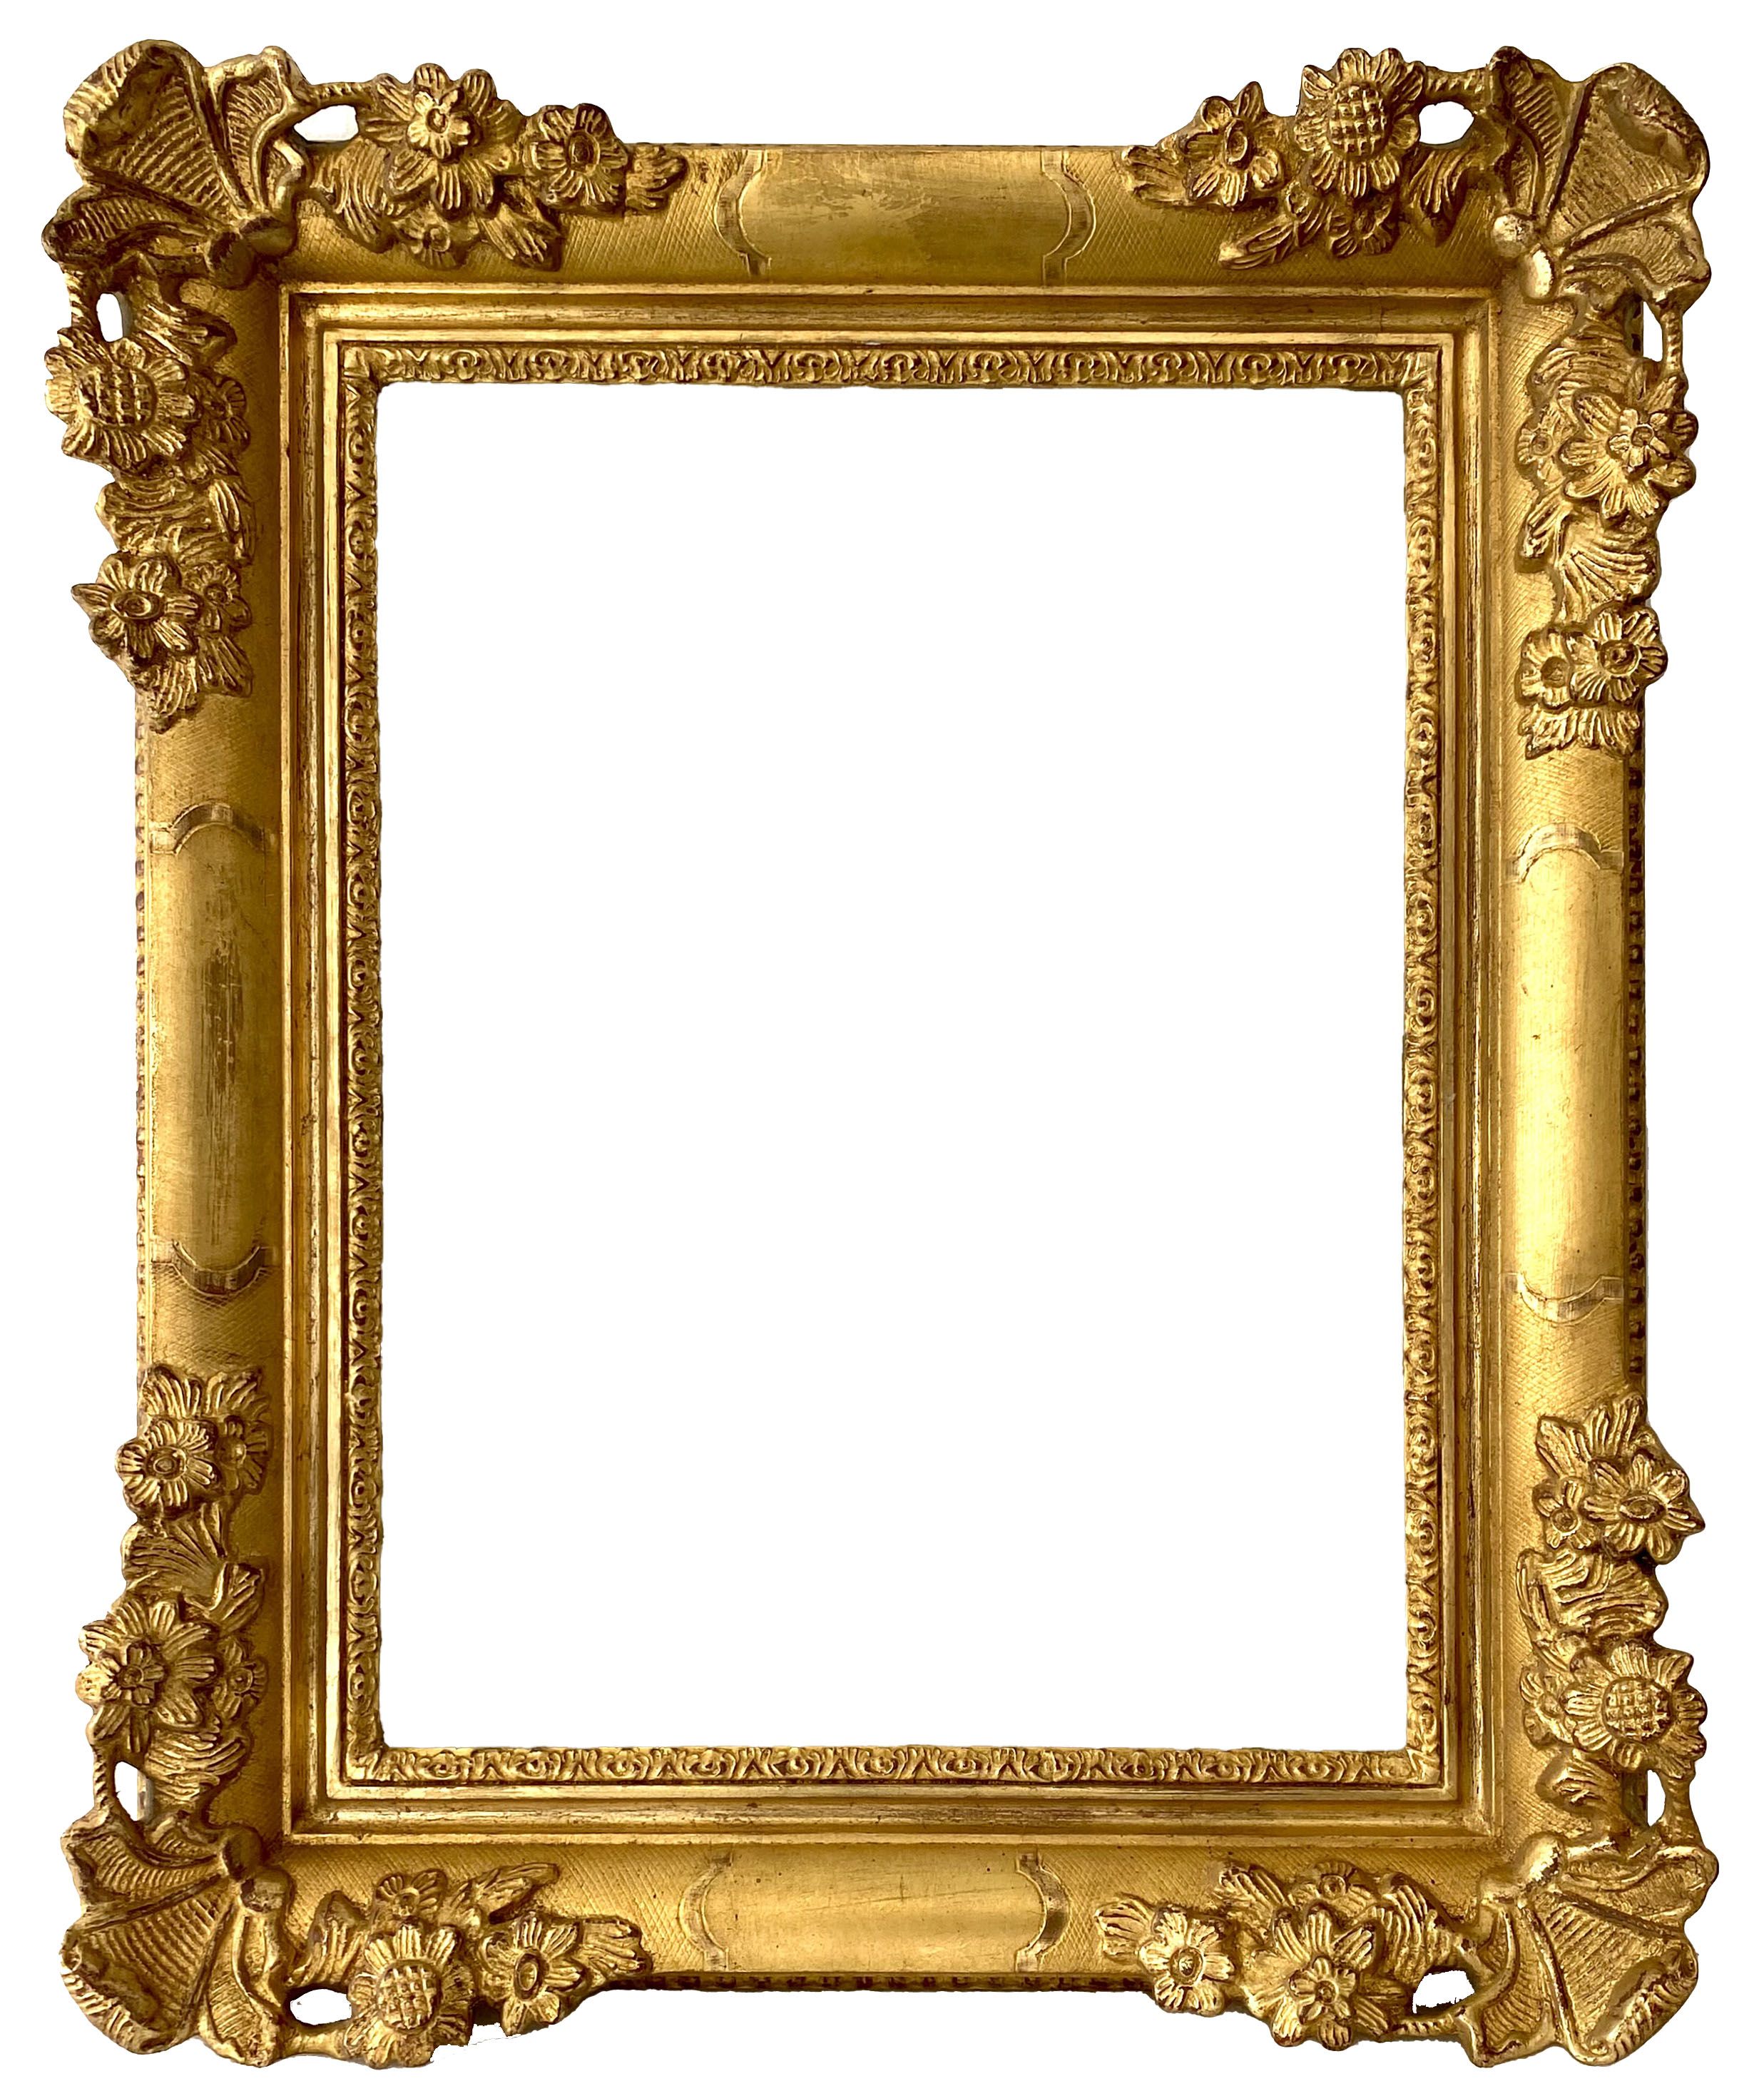 Cadre de style Louis XV - 43,00 x 32,80 - REF - 1271